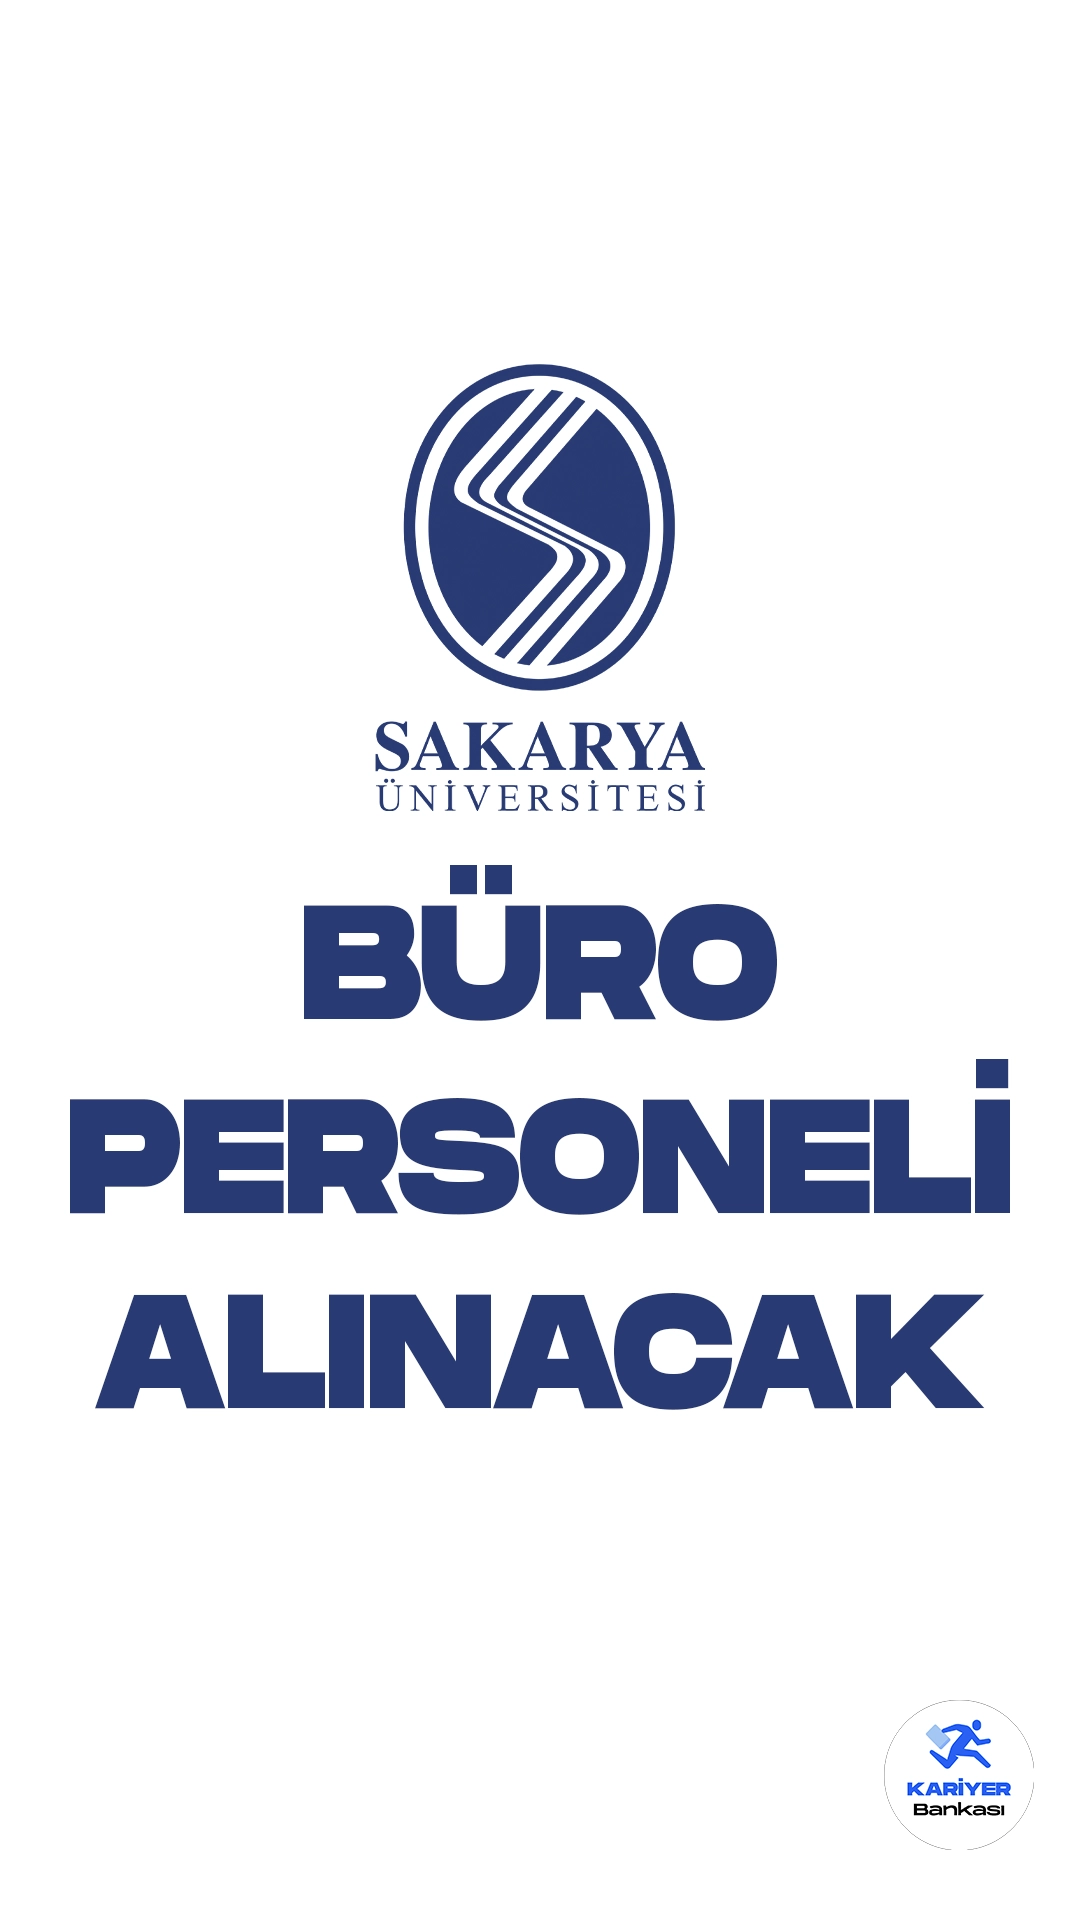 Sakarya Üniversitesi personel alımı duyurusu yayımlandı. Resmi Gazete ve Cumhurbaşkanlığı SBB'de yayımlanan duyuruya göre, Sakarya Üniversitesine büro personeli alımı yapılacak. Başvurular 17 Temmuz-31 Temmuz 2023 tarihleri arasında alınacak.